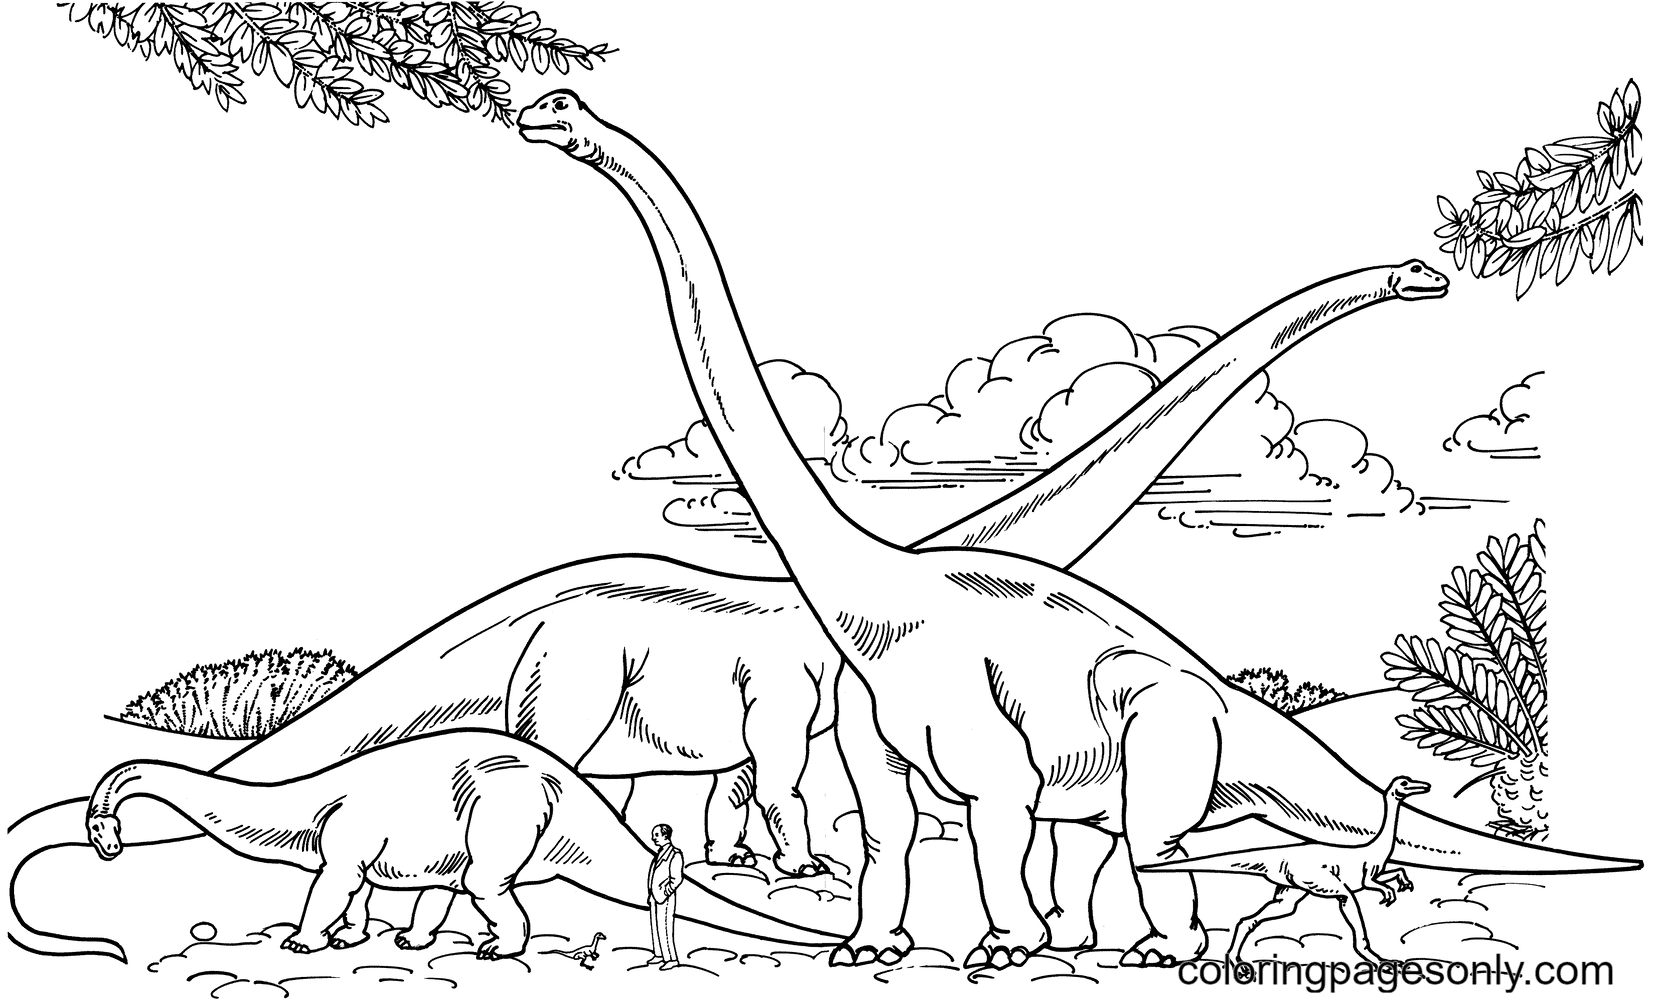 《侏罗纪世界》中的重龙和似鸡龙与人类的比较